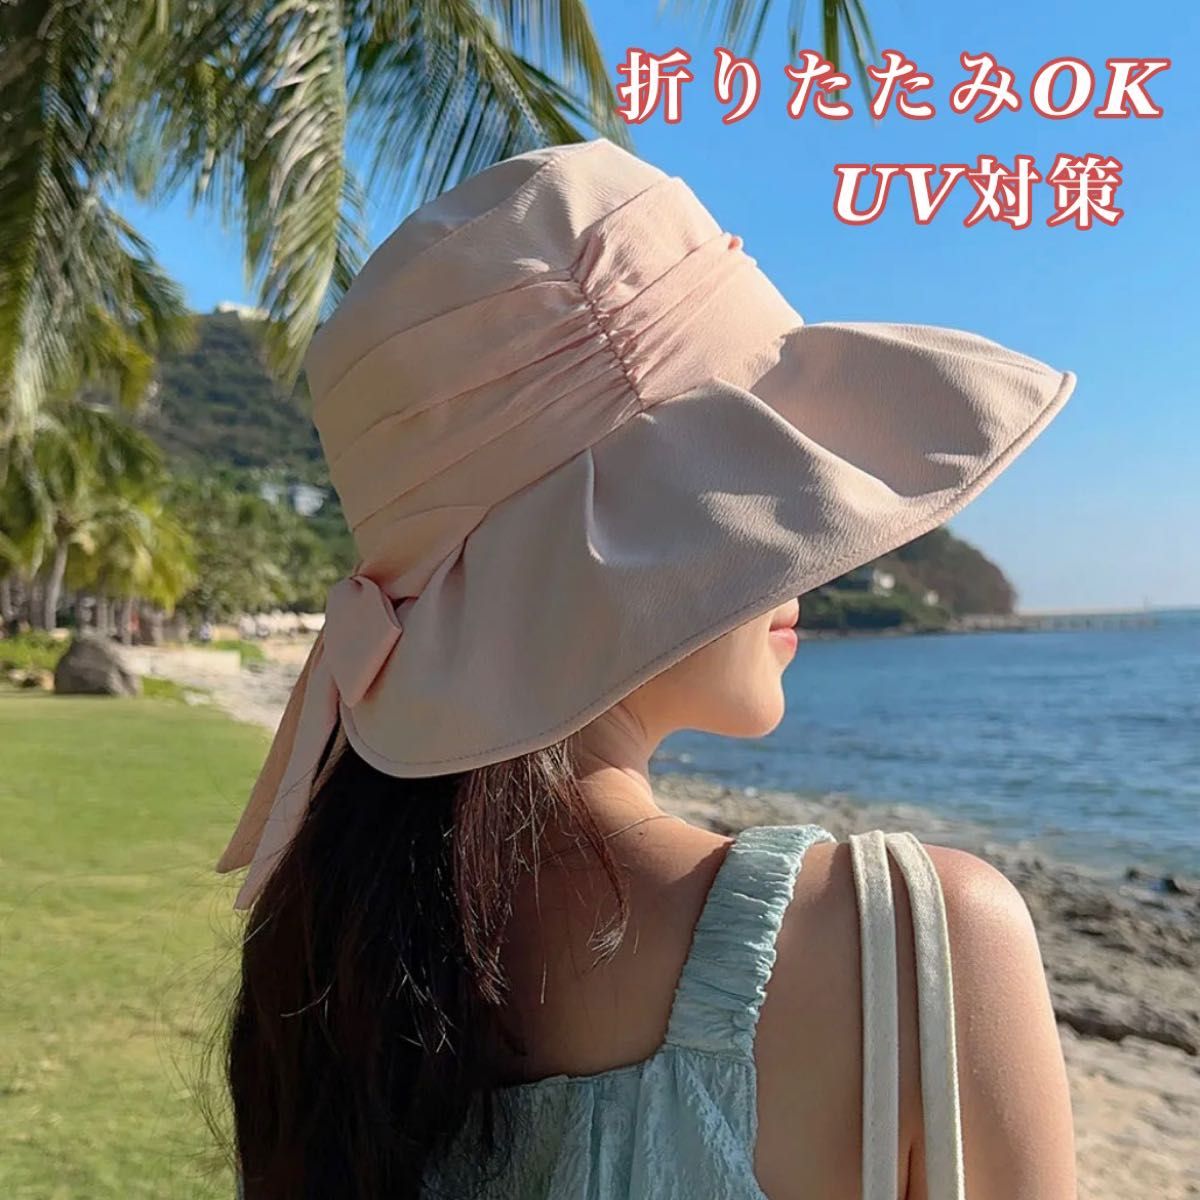 【新品】UVカット帽子 ピンク  紫外線対策 折りたたみ可能 リボン 顎紐付き 日よけ帽子